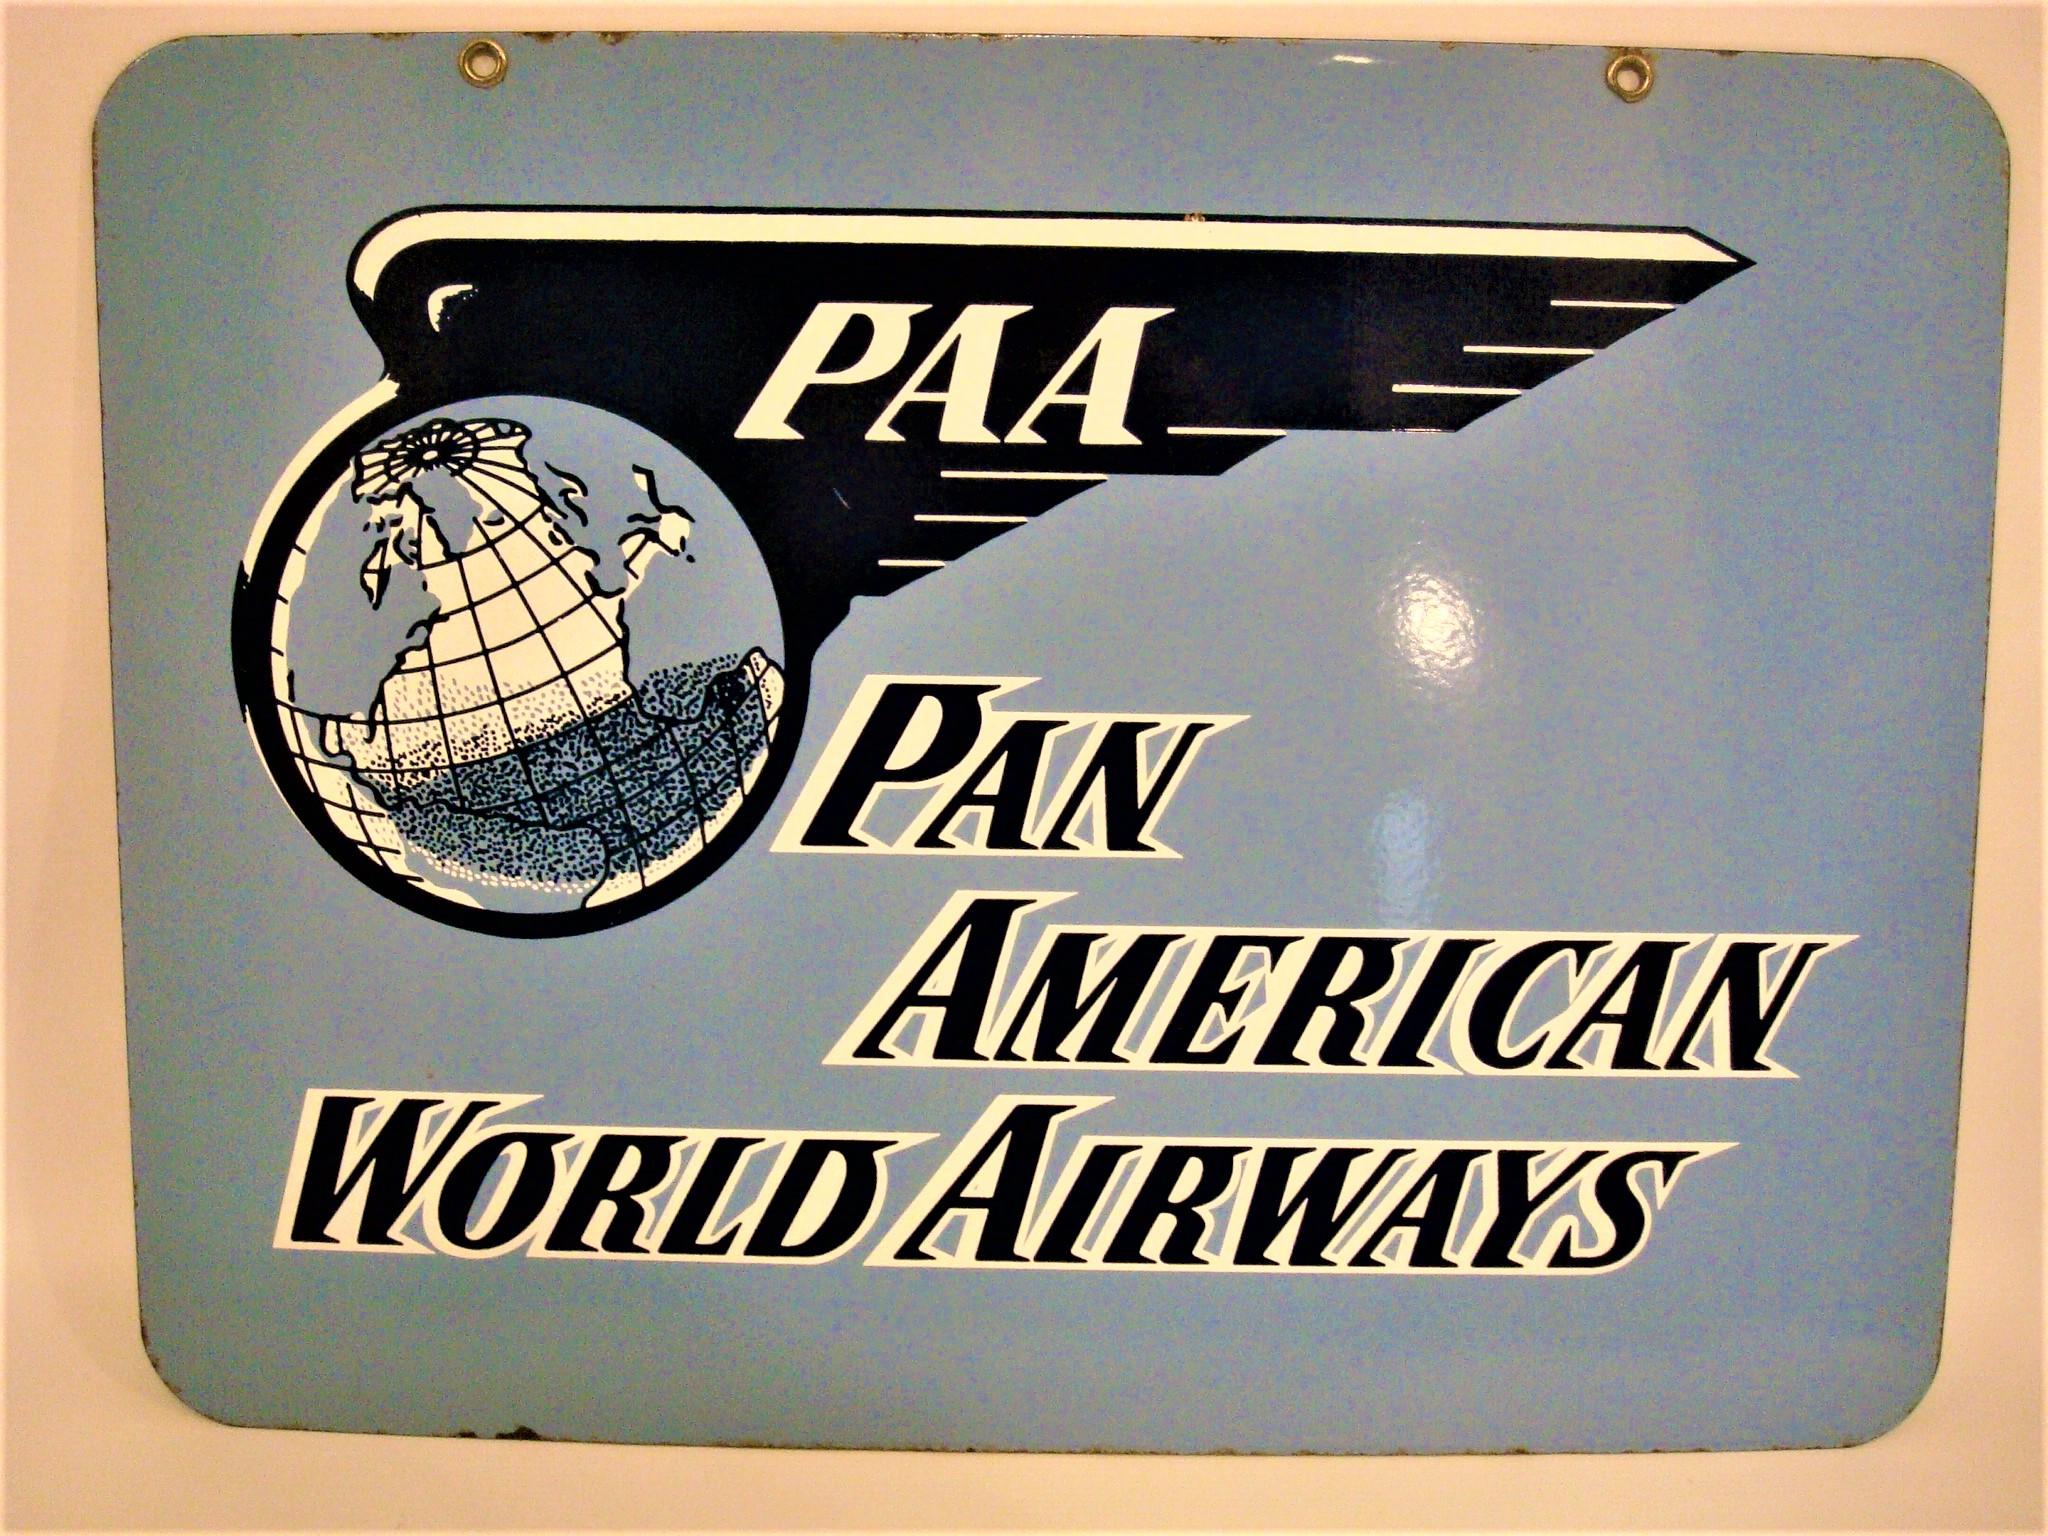 Enseigne en porcelaine et émail de Pan American World Airways, datant du milieu du 20e siècle. Ce panneau est pour Pan American World Airways. Les couleurs de l'enseigne sont le bleu clair, le bleu foncé et le blanc. Le texte sur le panneau indique